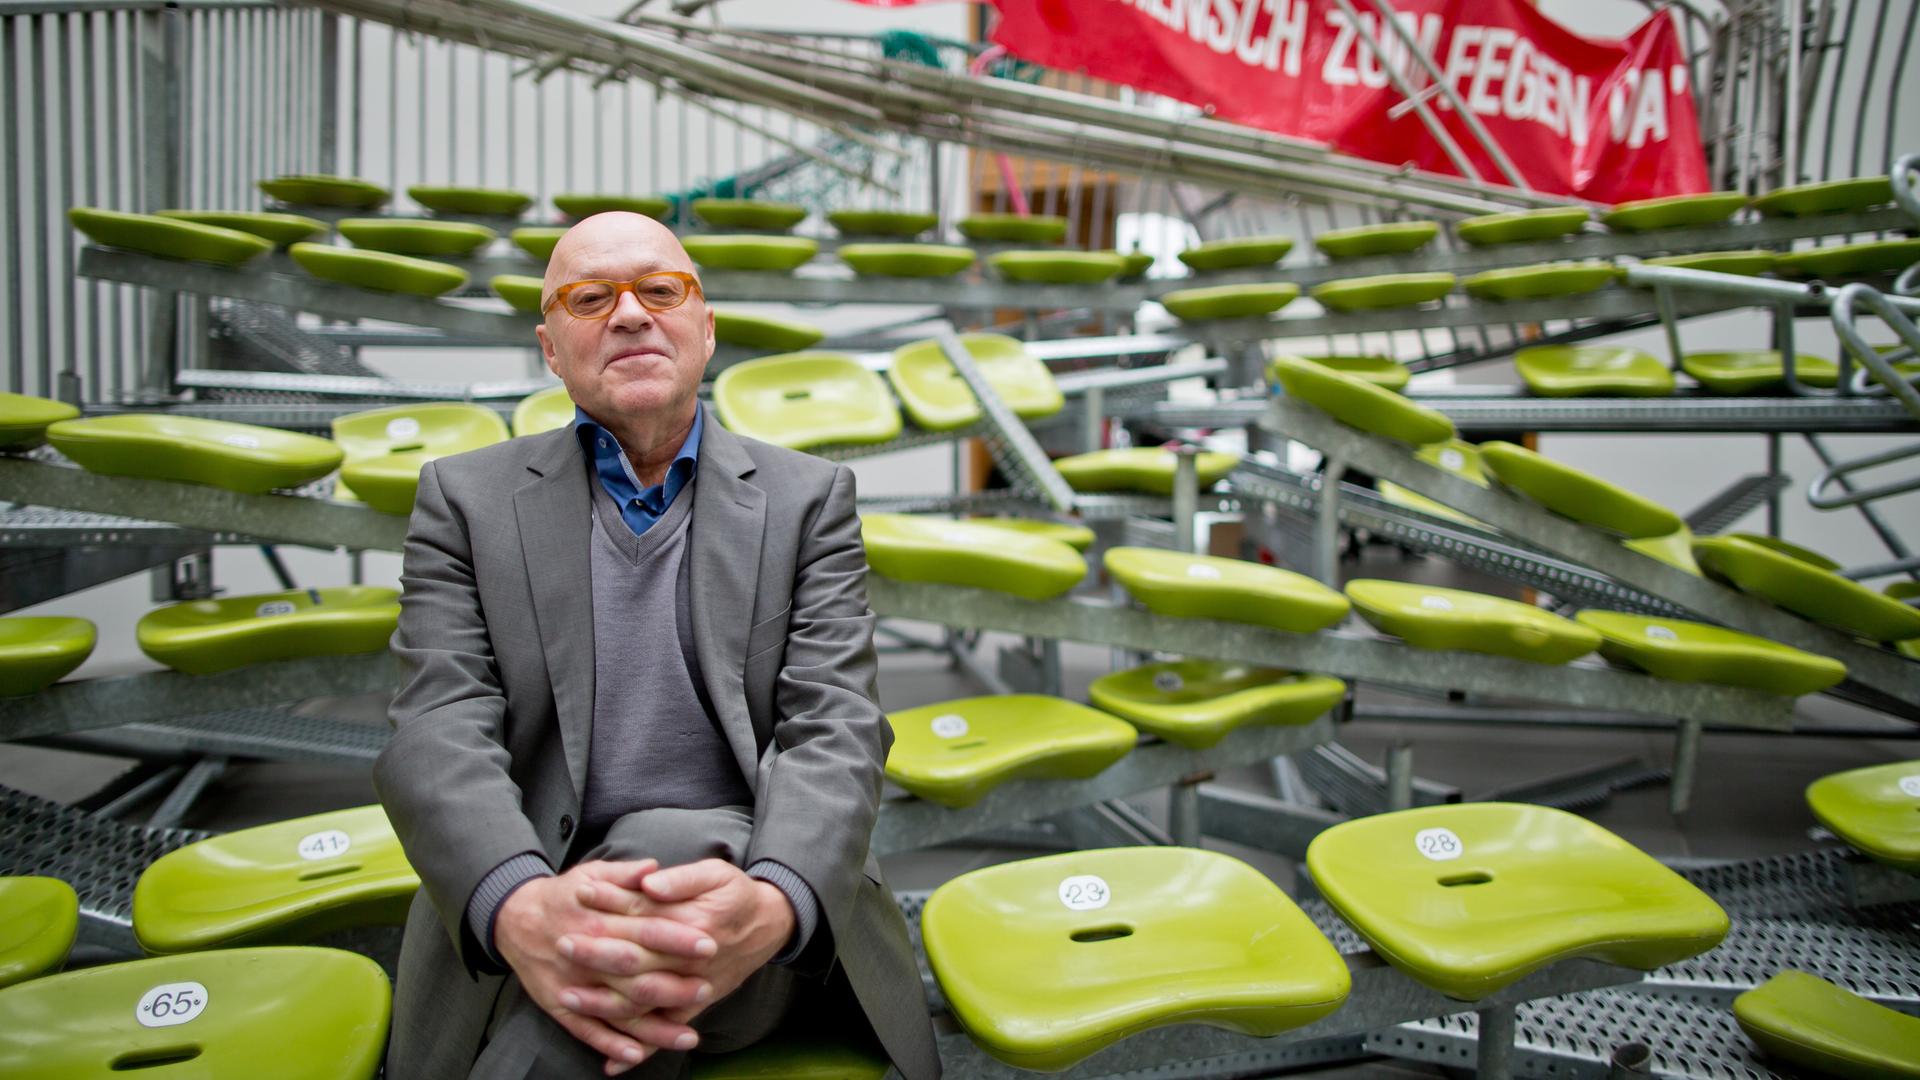 Der Künstler Olaf Metzel sitzt auf seinen kombinierten Installationen "Auf Wiedersehen" (1996/2015) und "In einer öffentlichen Halle ist nie ein Mensch zum Fegen da" (1996/2014) am 12.11.2015 im Neuen Museum in Nürnberg. Im Hintergrund ist ein Rotes Transparent mit einer weißen Aufschrift zu sehen sowie davor Sitzbankreihen mit grünfarbene Schalensitzen, die schief im Raum stehen und ineinander verwebt sind. Im Vordergrund sitzt Olaf Metzel, ein Mann mit Glatze. Er trägt einen dunkelgrauen Anzug über einem grauen Pullover und einem blauen Hemd.